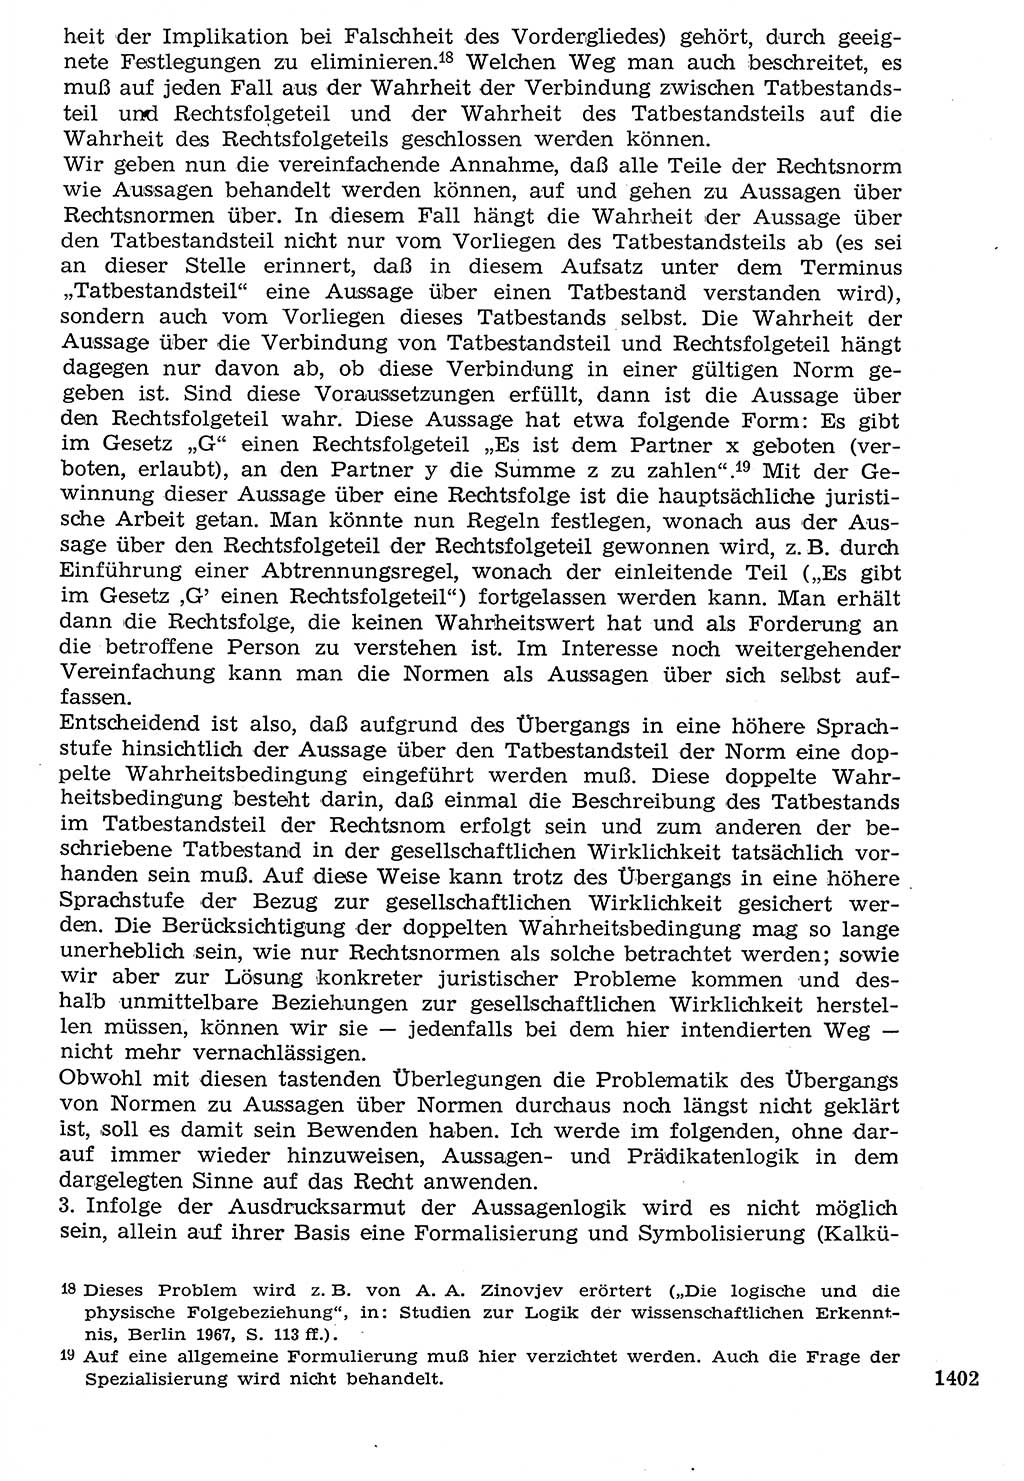 Staat und Recht (StuR), 17. Jahrgang [Deutsche Demokratische Republik (DDR)] 1968, Seite 1402 (StuR DDR 1968, S. 1402)